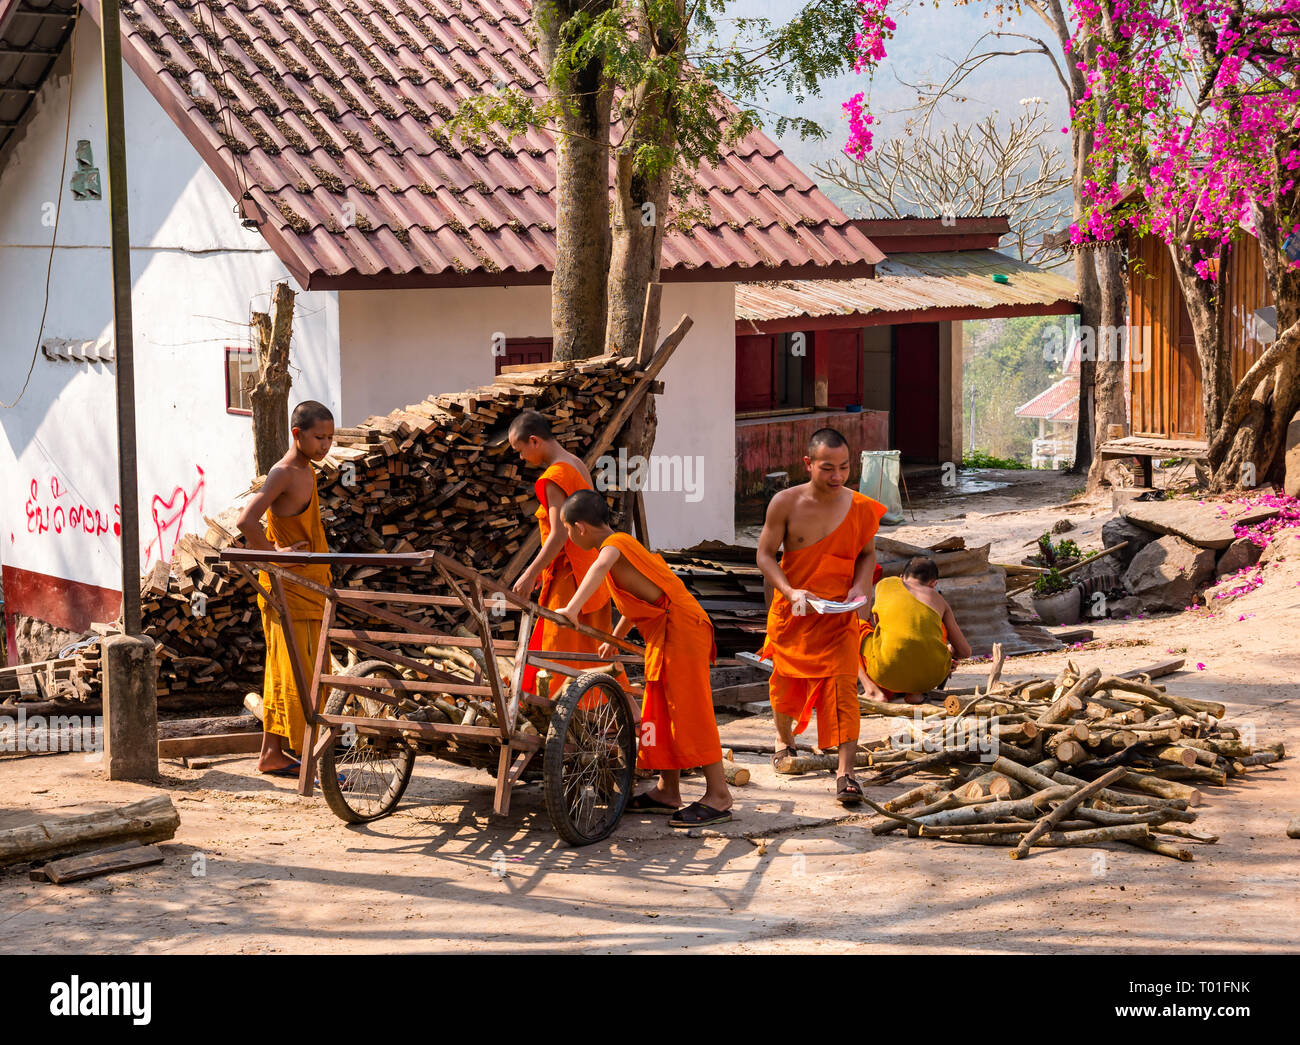 Los jóvenes monjes budistas que trabajan recogiendo leña, Wat Phoy Khuay monasterio, en Luang Prabang, Laos Foto de stock